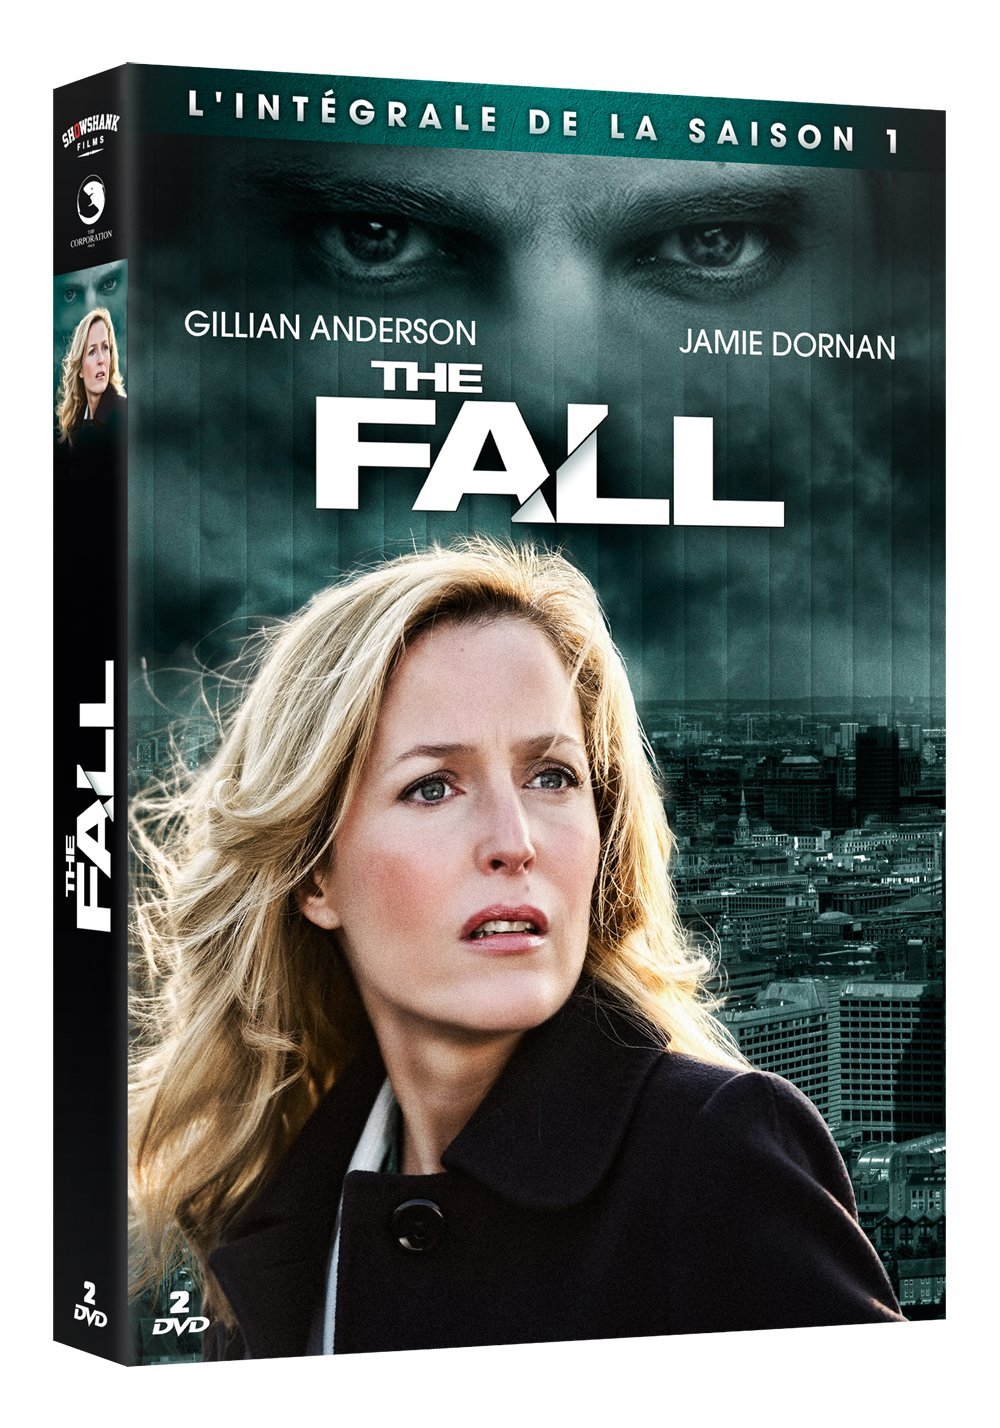 The Fall: un nouveau drama très noir avec Gillian Anderson - Page 2 81yKsPq4oVL._SL1428_